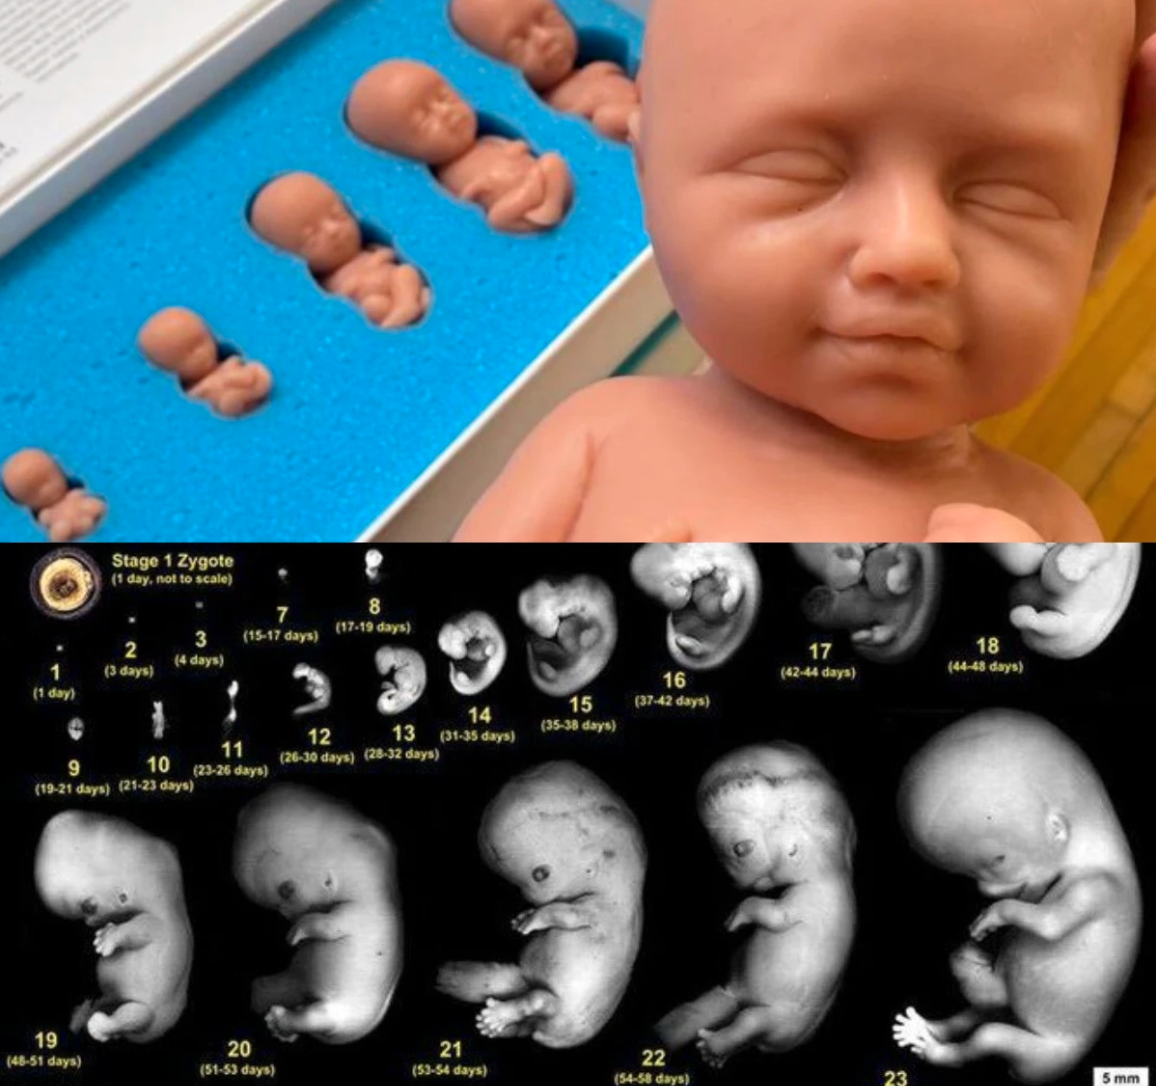 Organisationen Kvinnor för livet hävdar att foster ser ut som en ”liten människa” redan i fjärde veckan. Det stämmer inte.